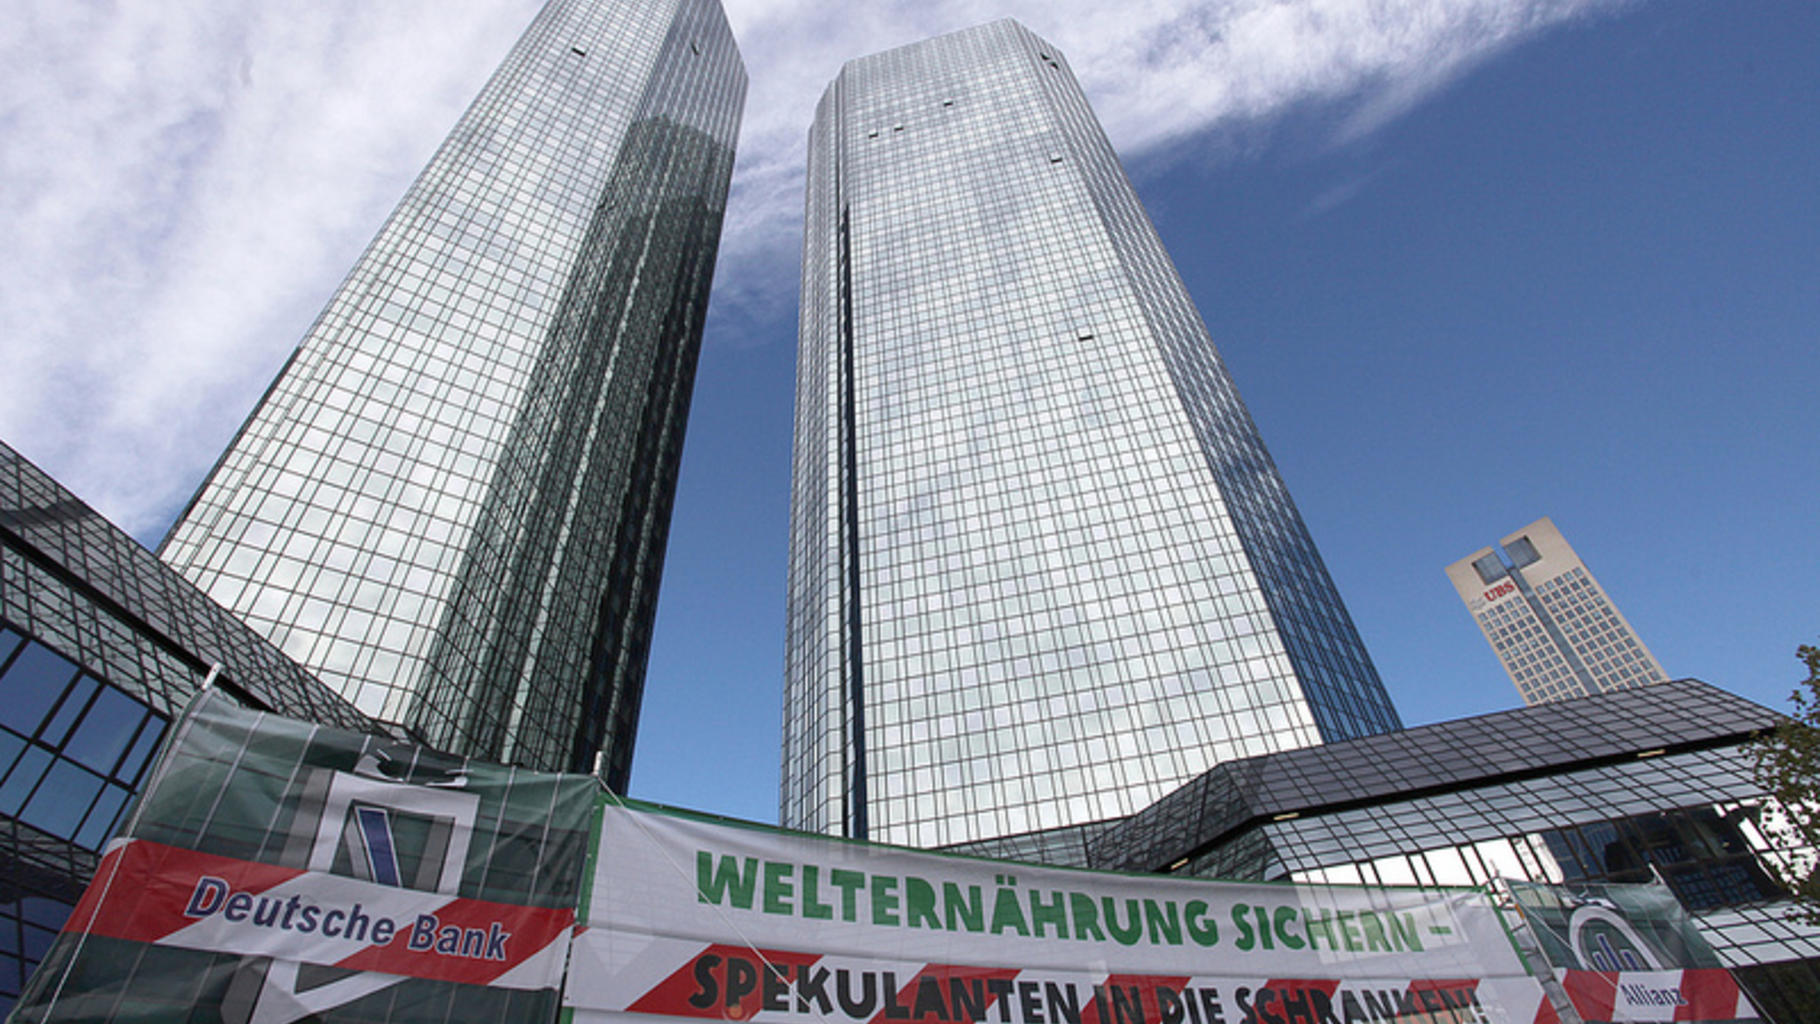 Demo gegen Nahrungsmittelspekulation vor Deutscher Bank in Frankfurt am Main 